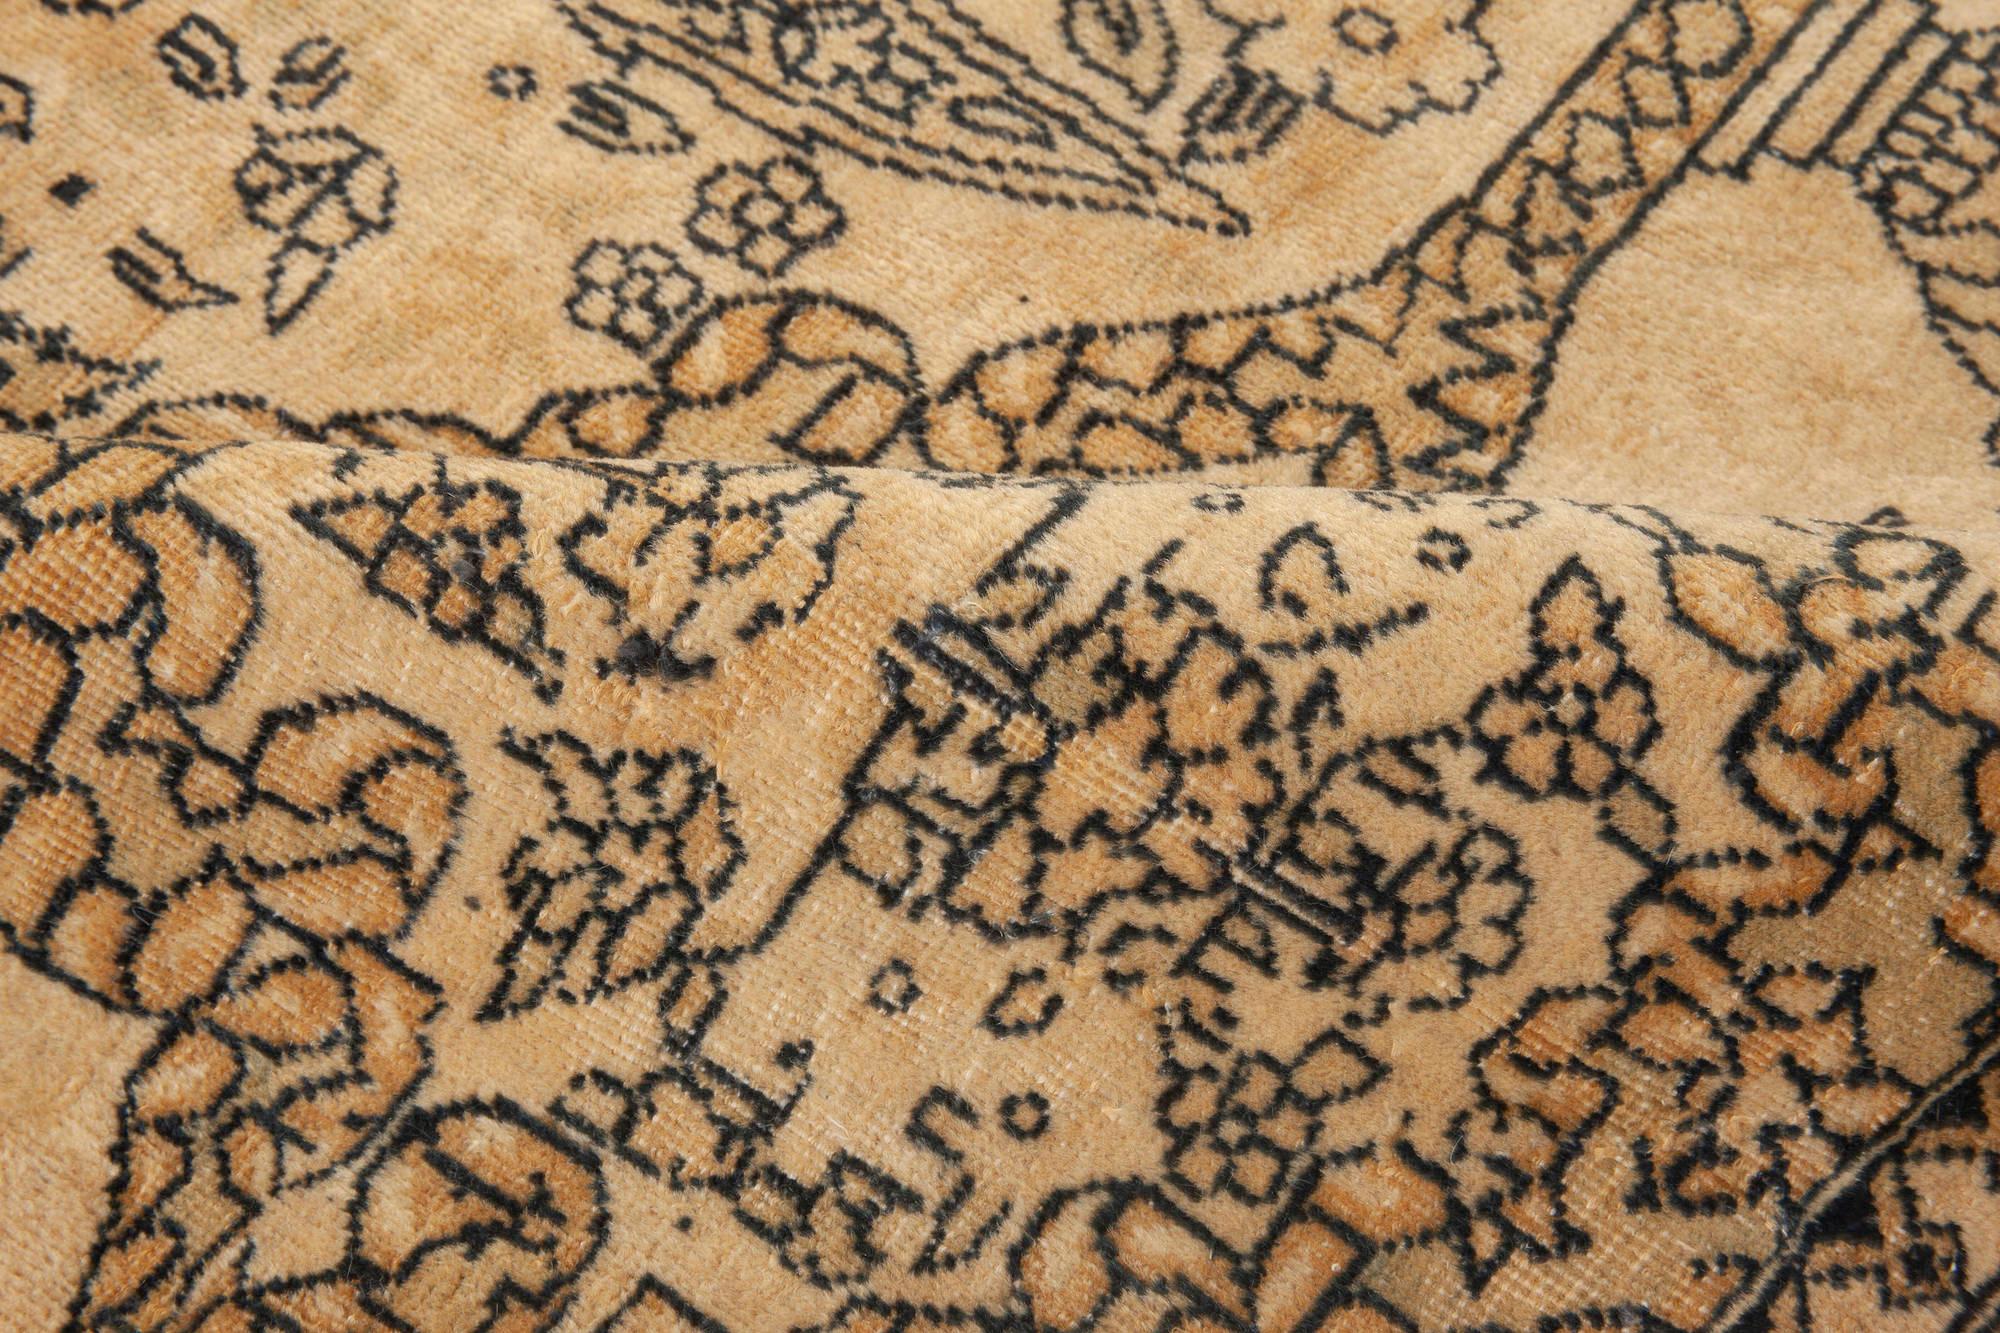 Oversized Vintage Indian Carpet (size adjusted)
Size: 16'0